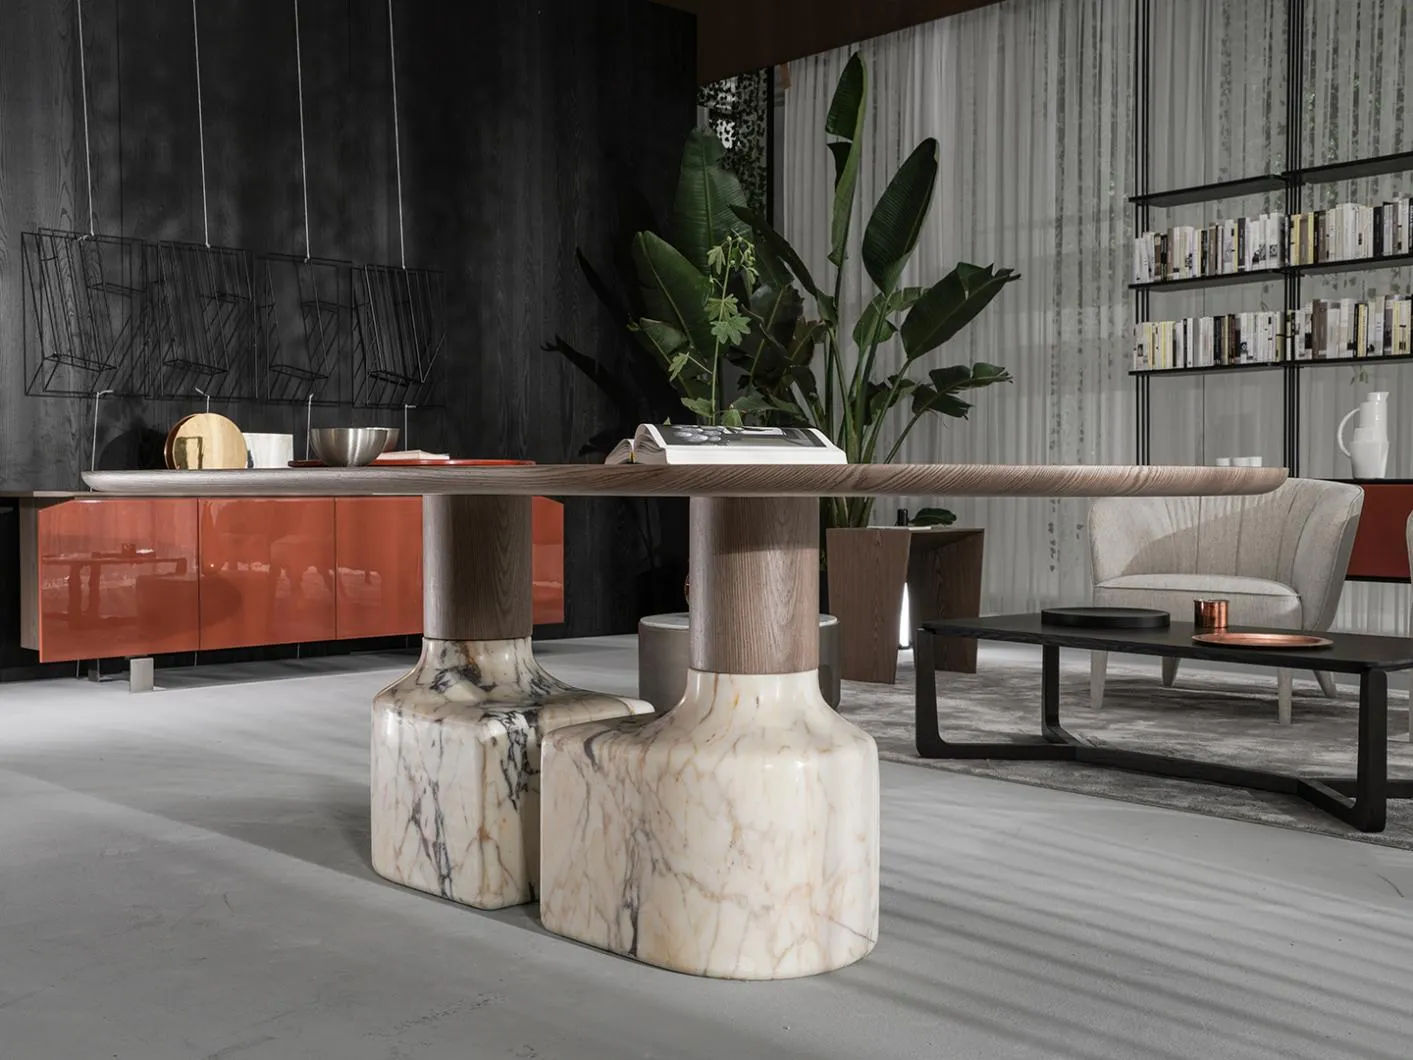 Tirreno, Casa International 'Allover 2021' collection designed by Mauro Lipparini